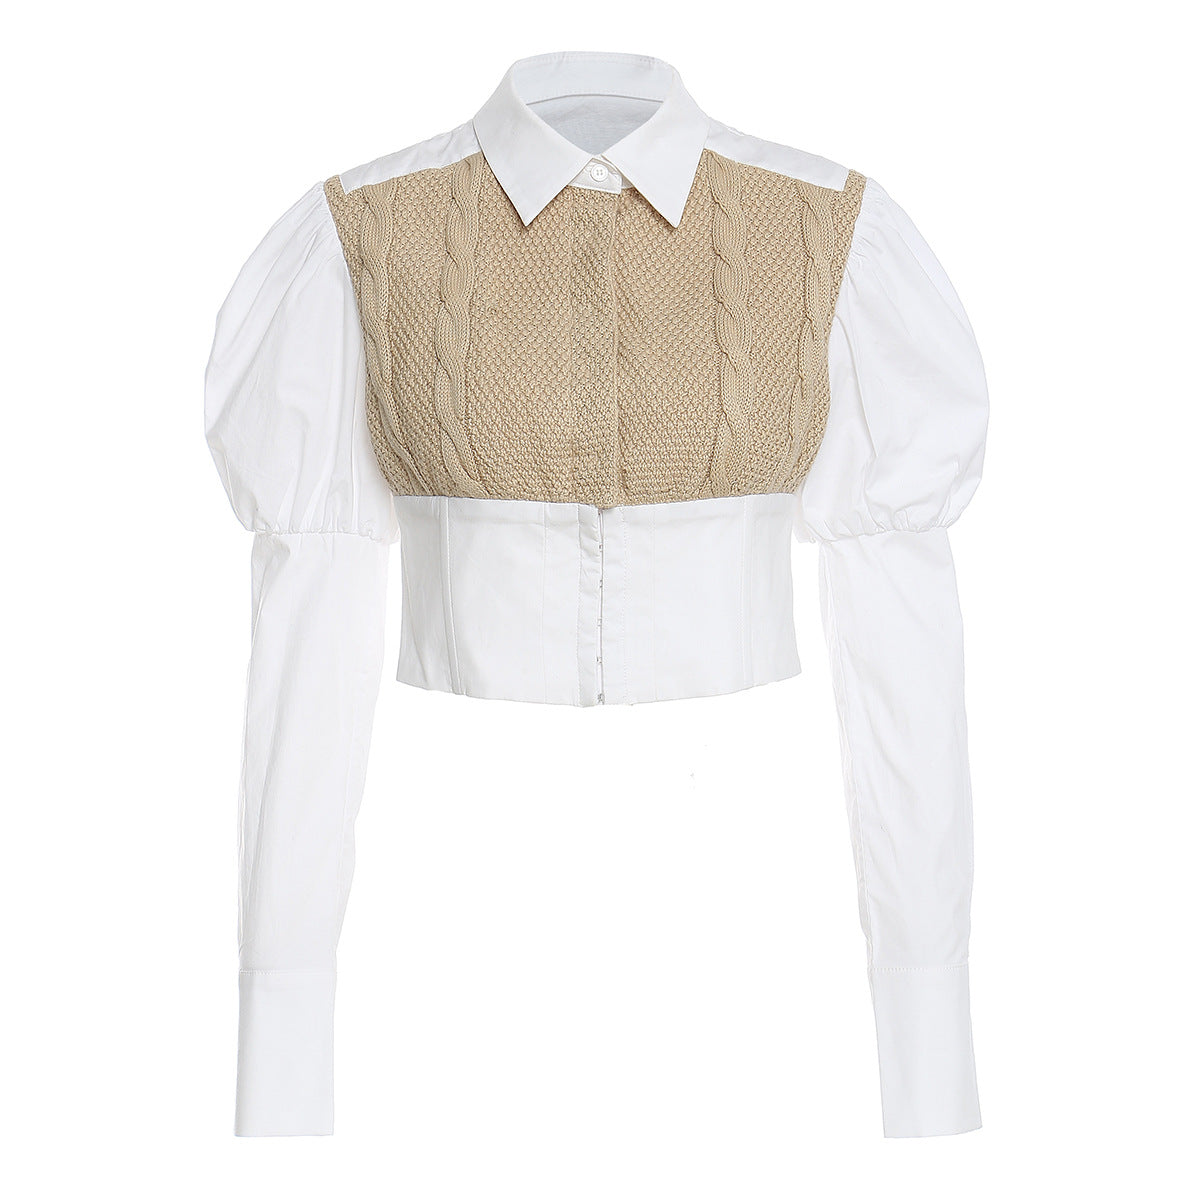 Woven Twisted Wool Stitching Cotton Shirt Puff Sleeves Shirt Shirt